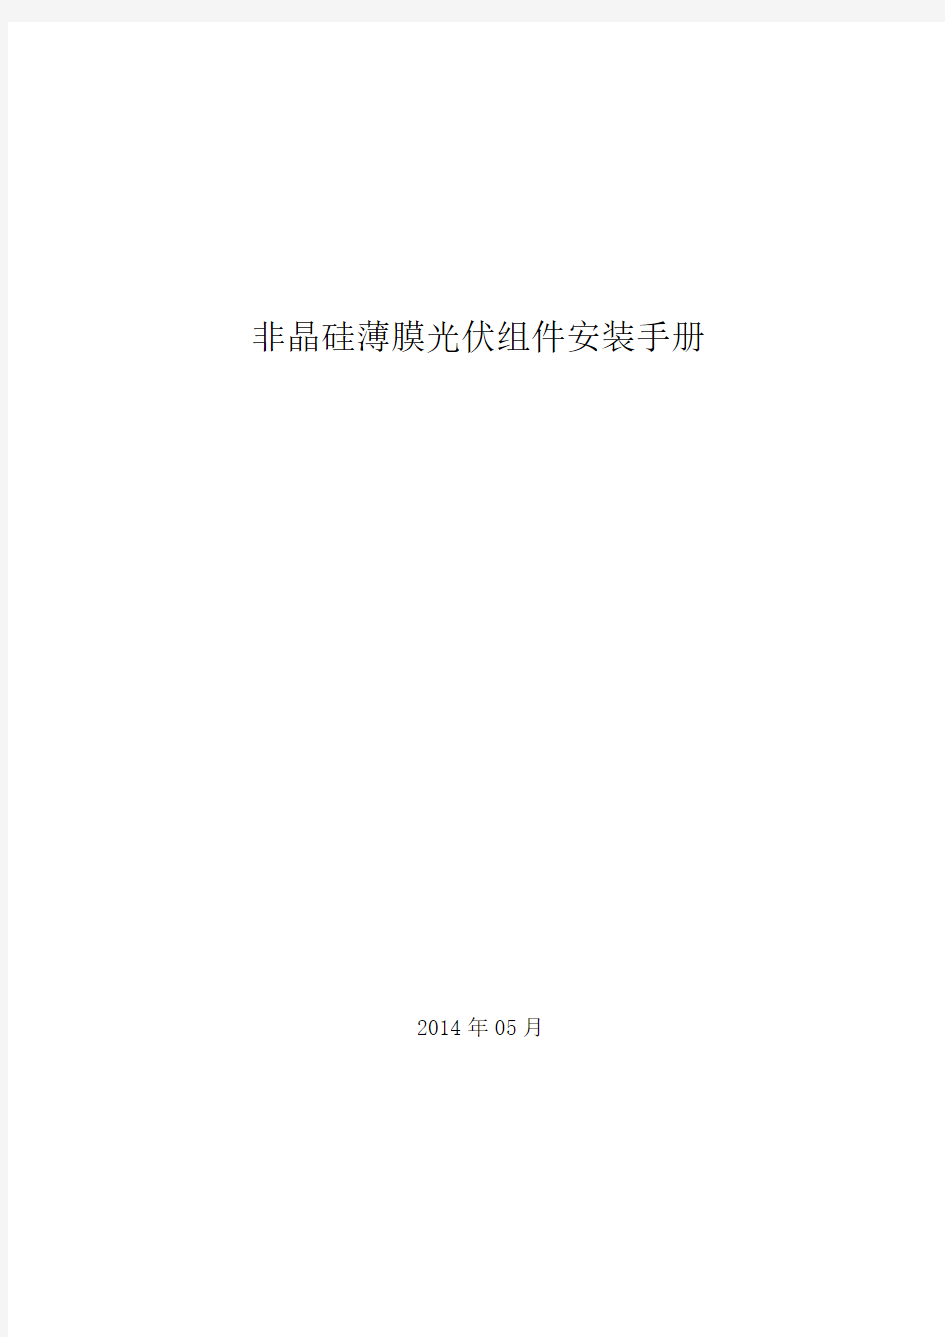 非晶薄膜光伏组件安装手册(中国)